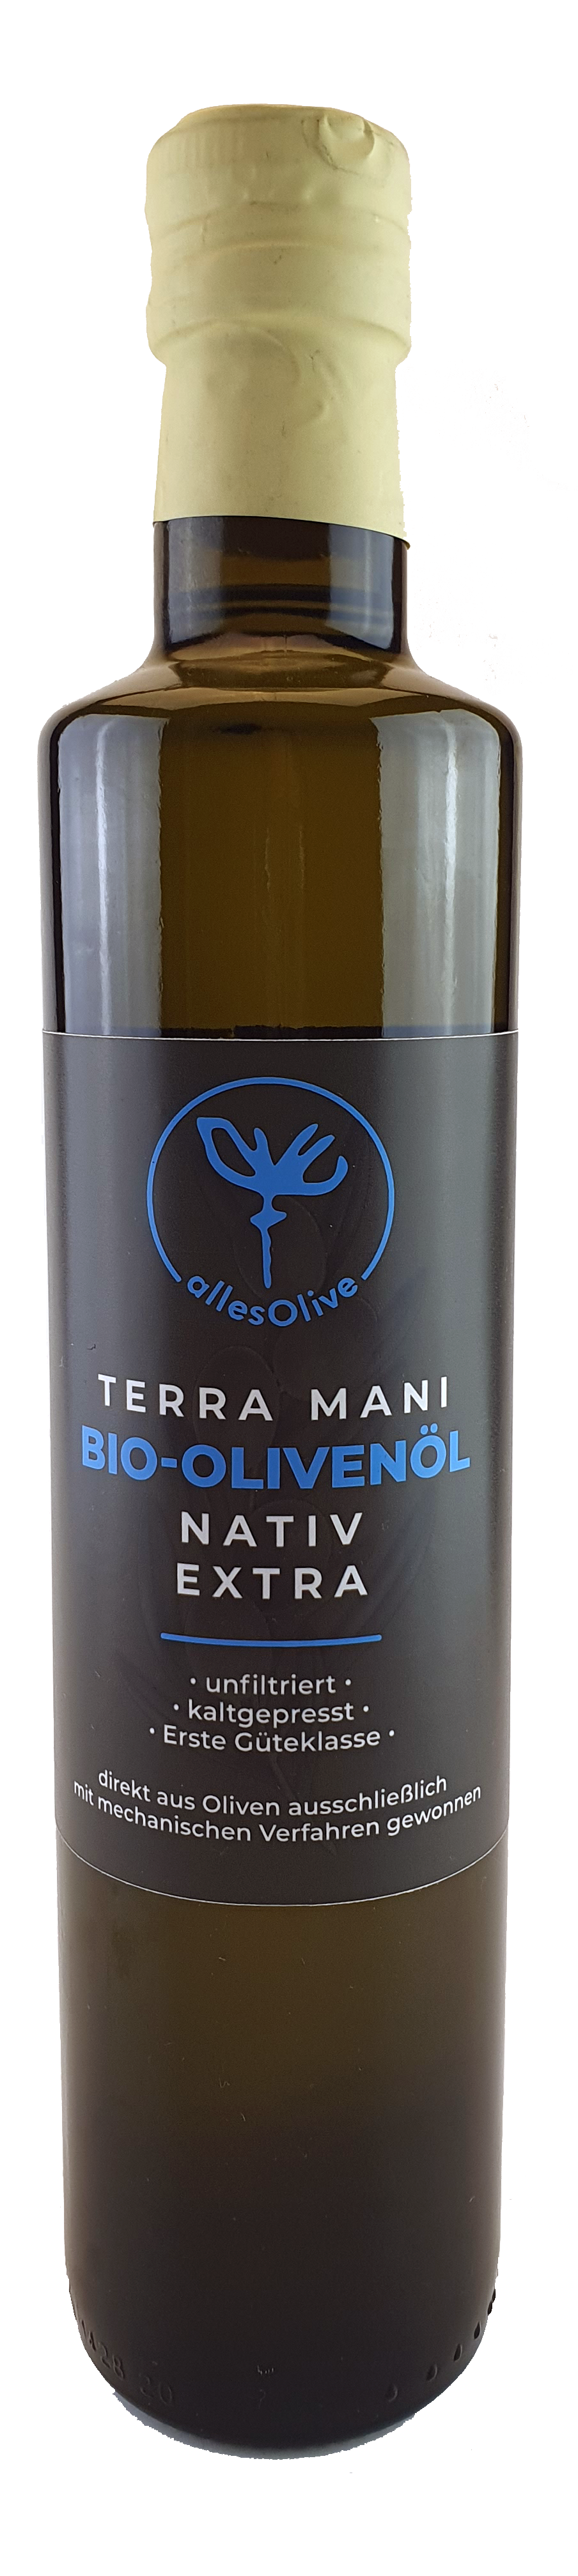 Aceite de oliva virgen extra orgánico y nativo TERRA-MANI, sin filtrar, botella de 500 ml.